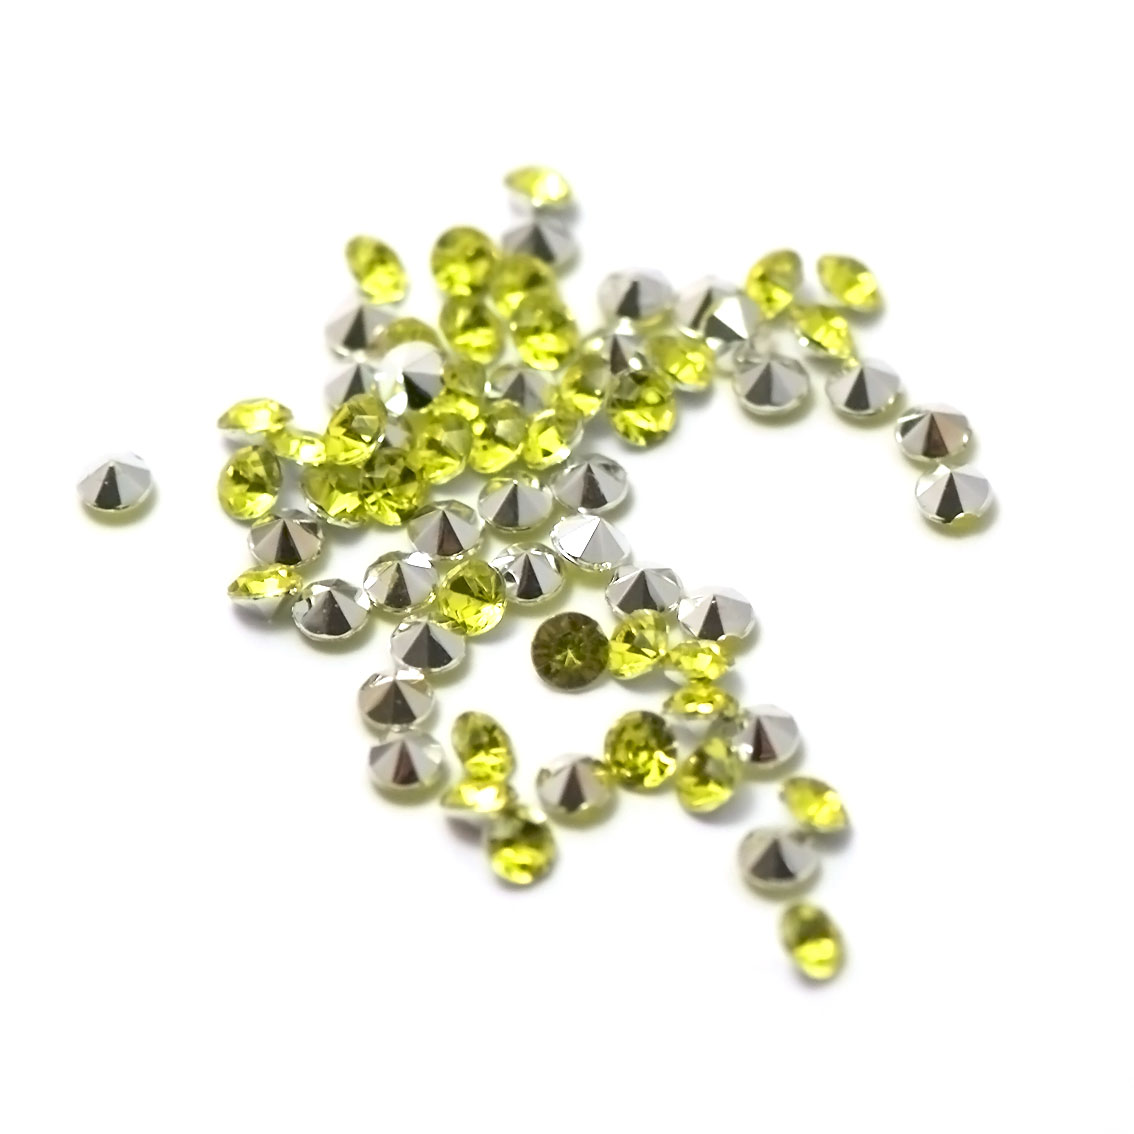 5g de perles strass en verre à coller cône 4 mm, vert fluor